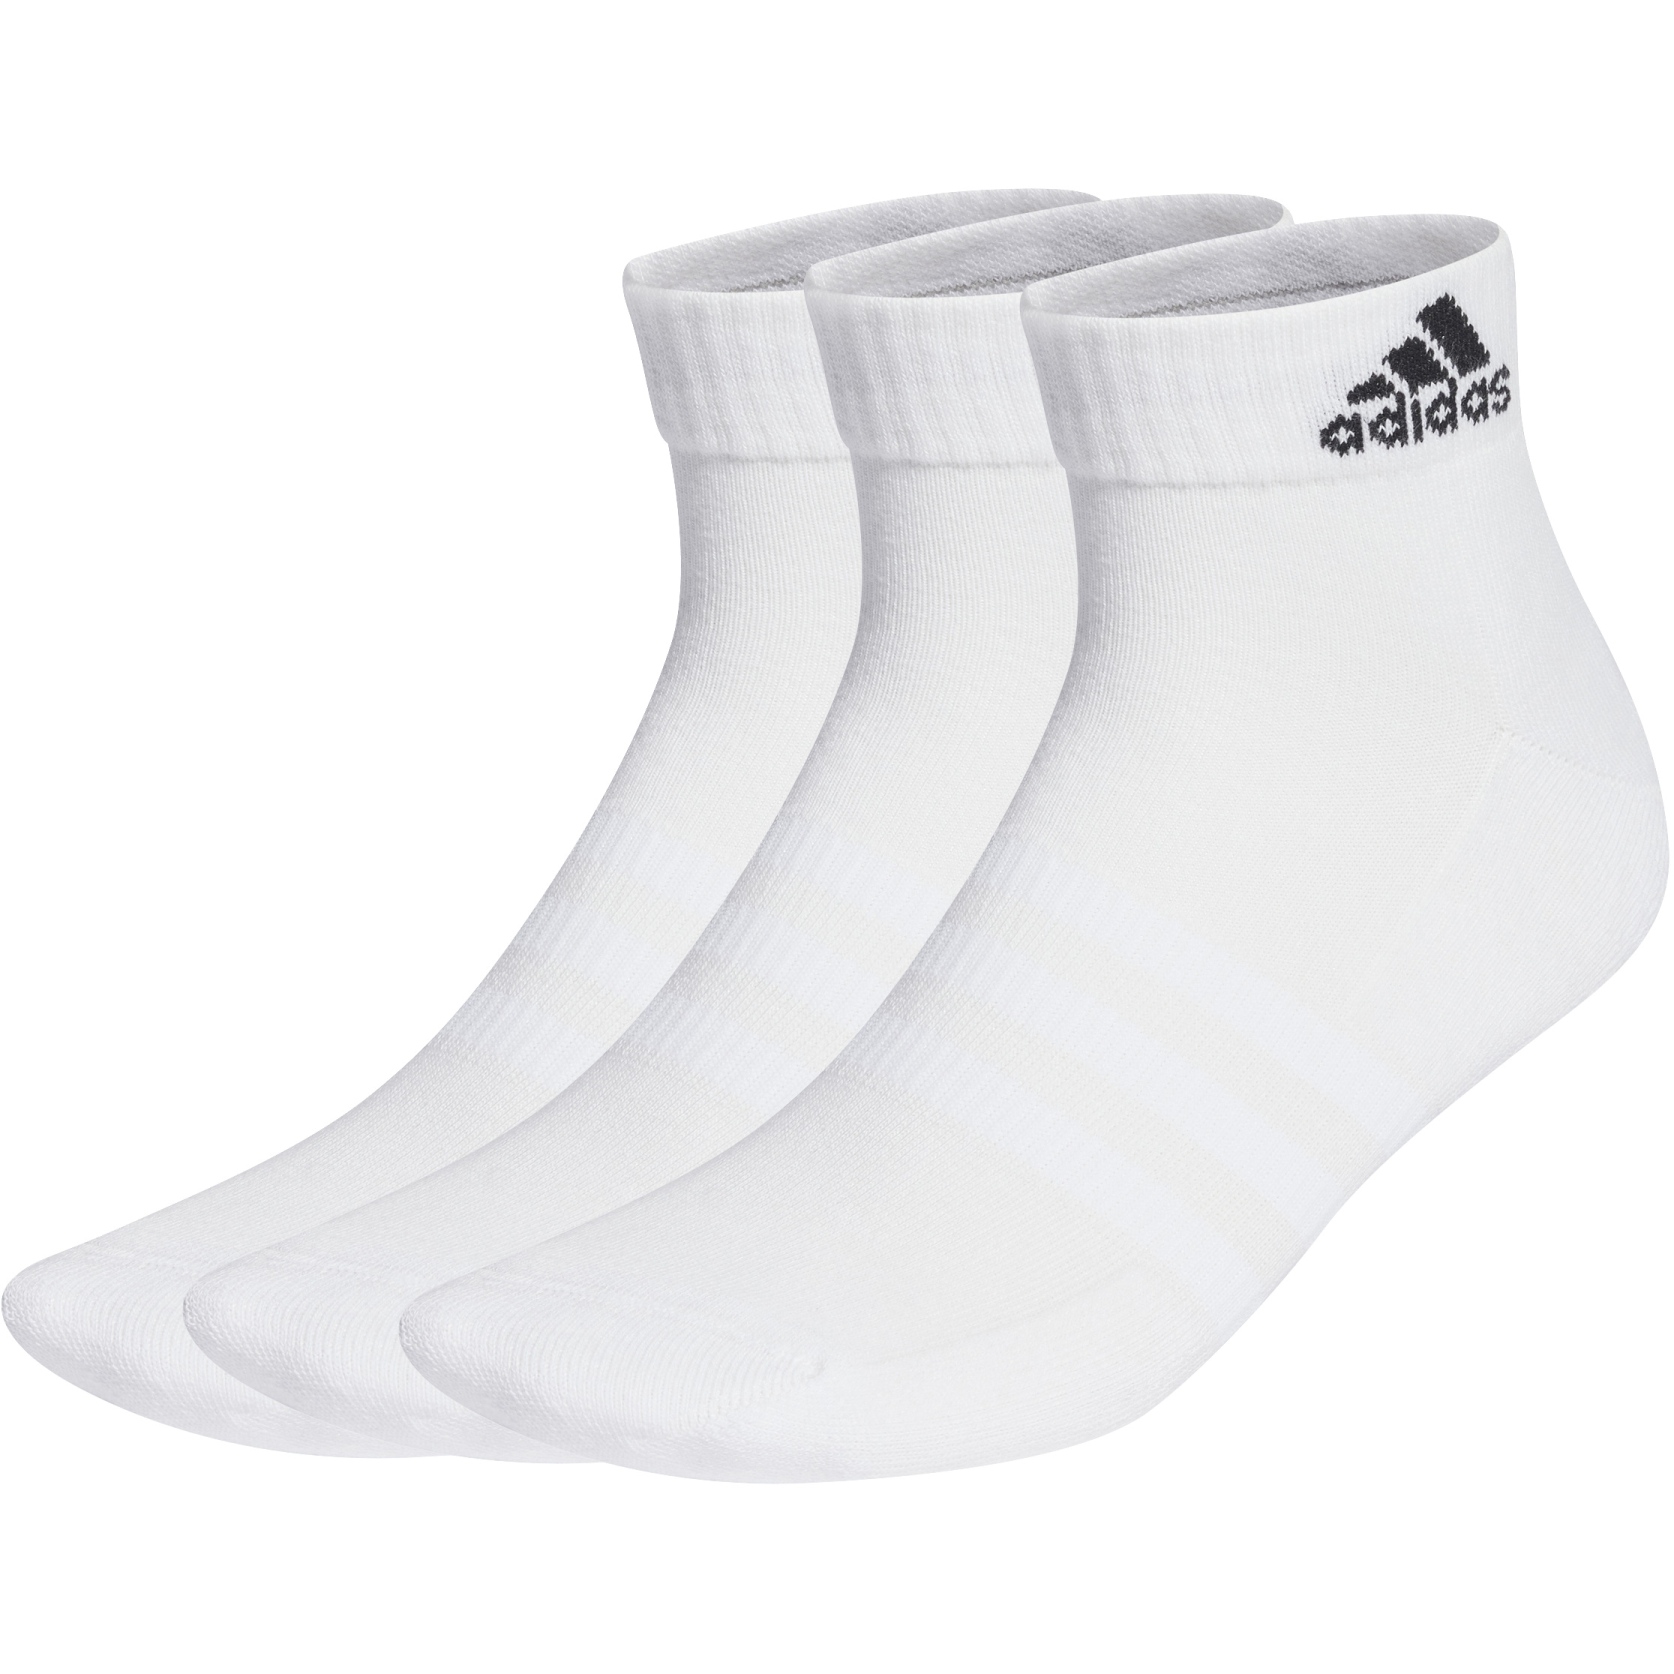 Produktbild von adidas Cushioned Sportswear Ankle Socken - 3 Paar - weiß/schwarz HT3441